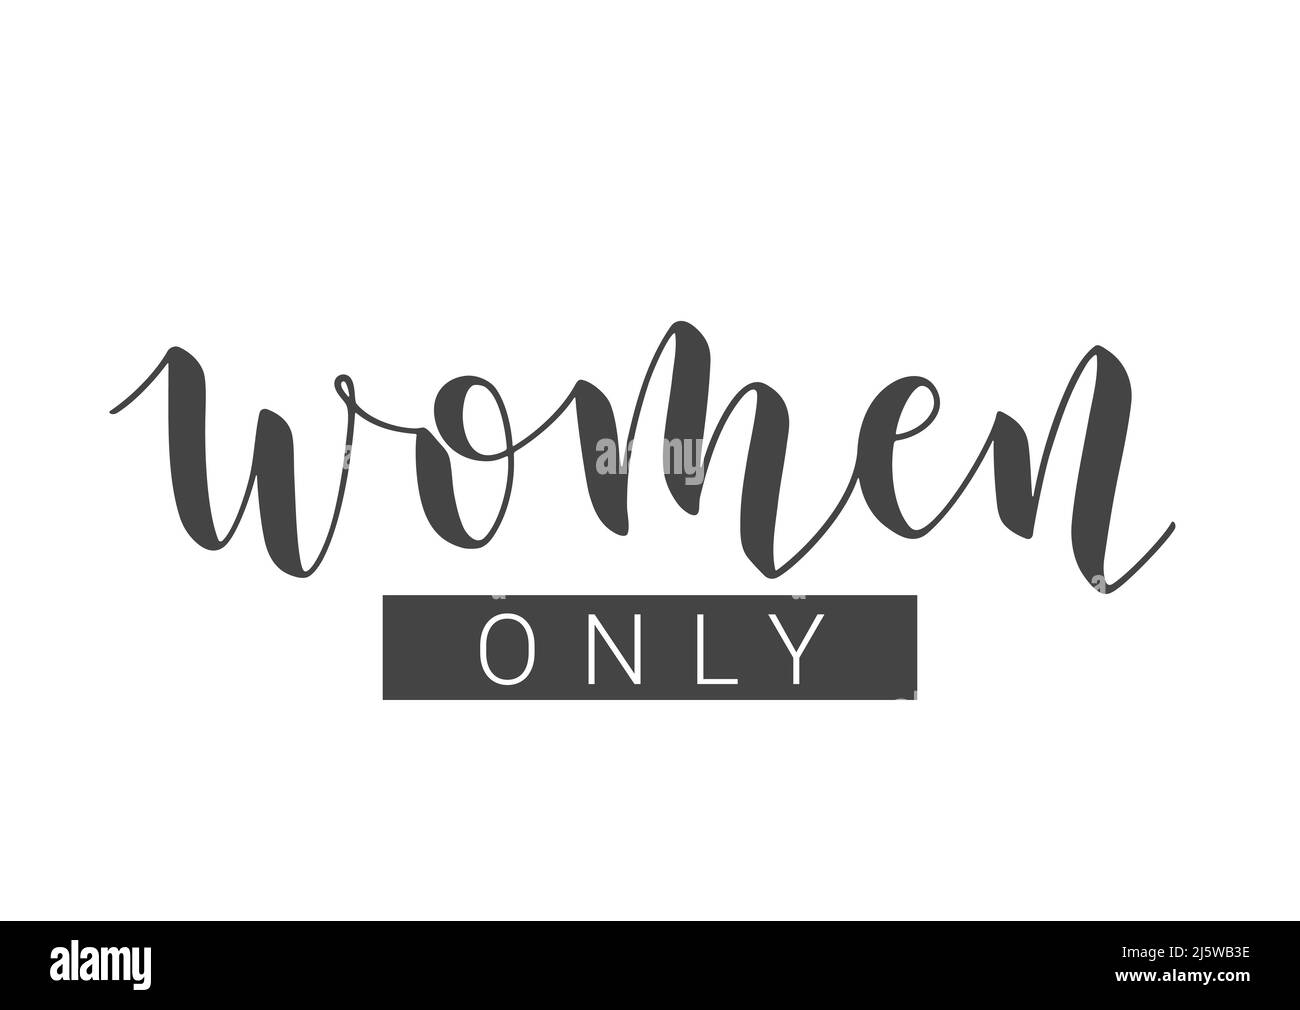 Vektorgrafik. Handgeschriebener Schriftzug von Women Only. Vorlage für Karte, Etikett, Postkarte, Poster, Aufkleber, Print- oder Web-Produkt. Stock Vektor